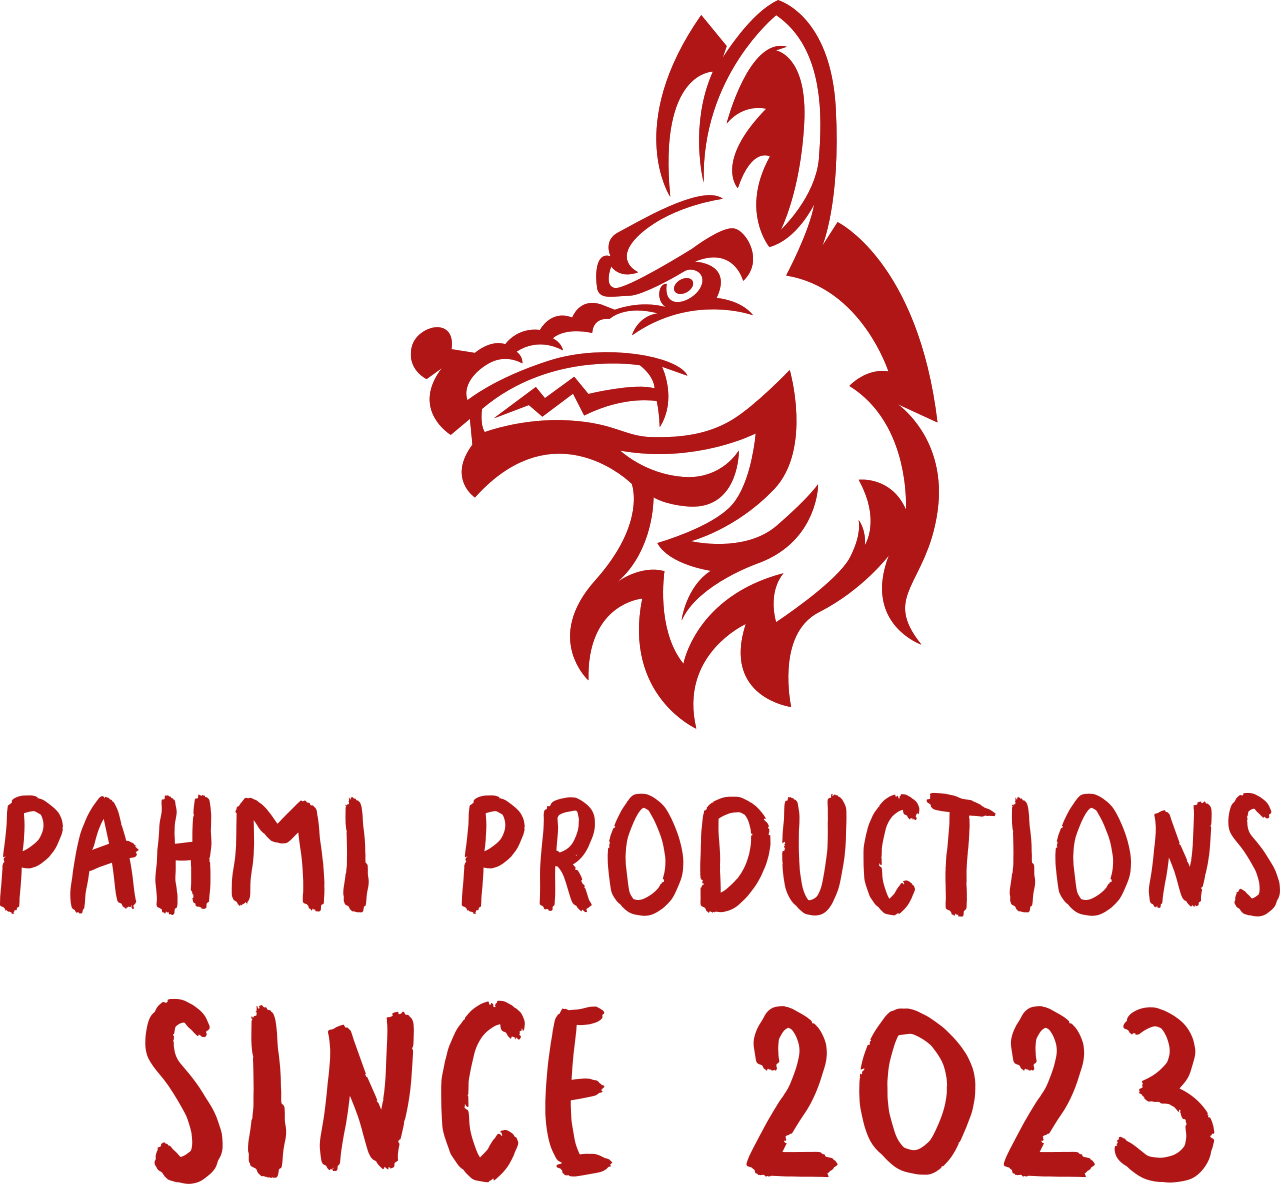 Pahmi Productions 's web page